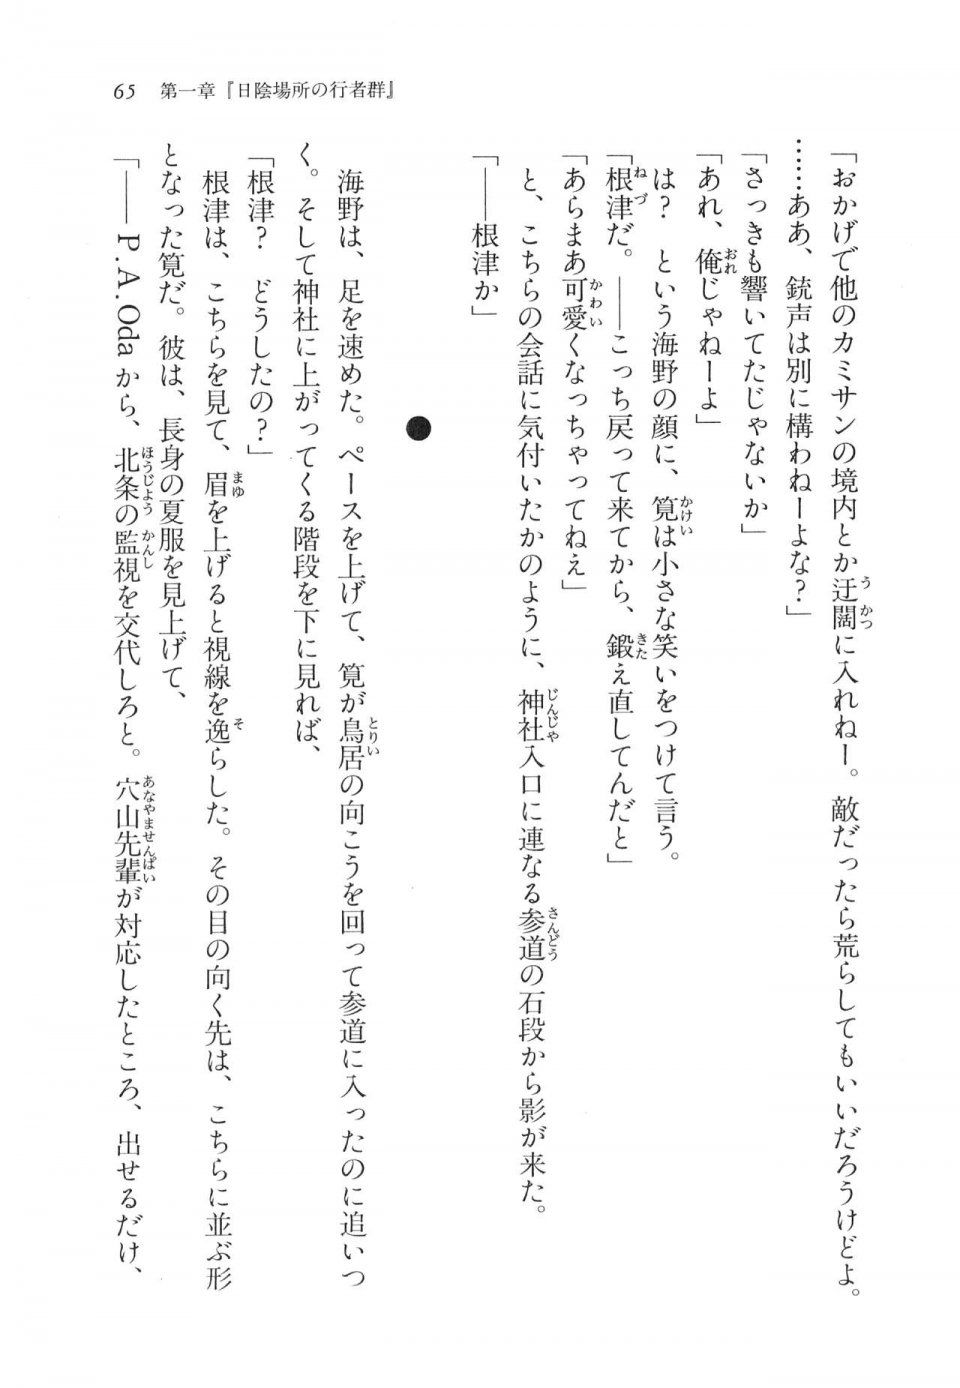 Kyoukai Senjou no Horizon LN Vol 11(5A) - Photo #65